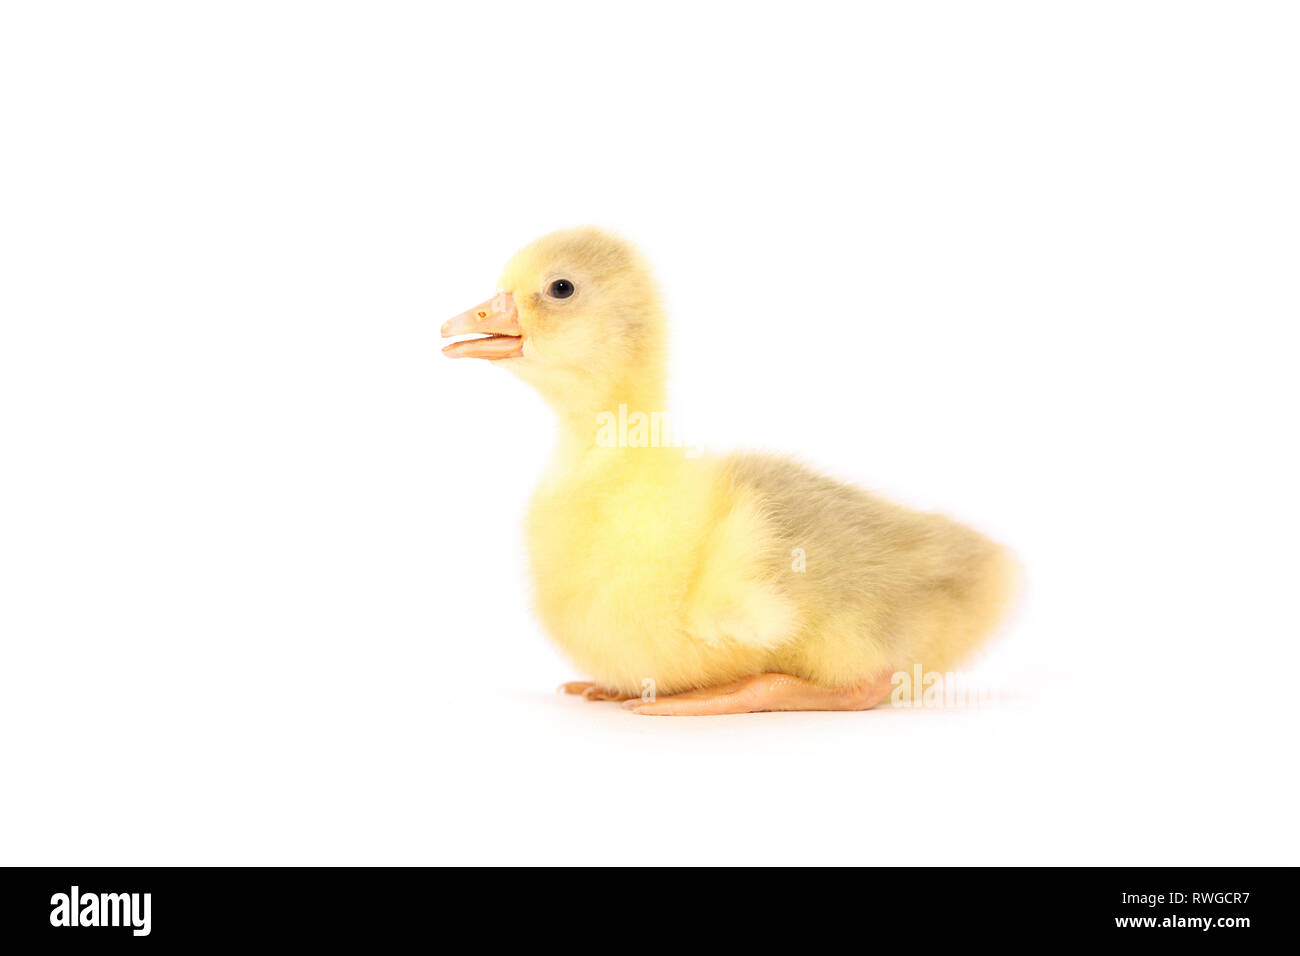 L'oie domestique. Gosling assis, vu de côté. Studio photo, vu sur un fond blanc. Allemagne Banque D'Images